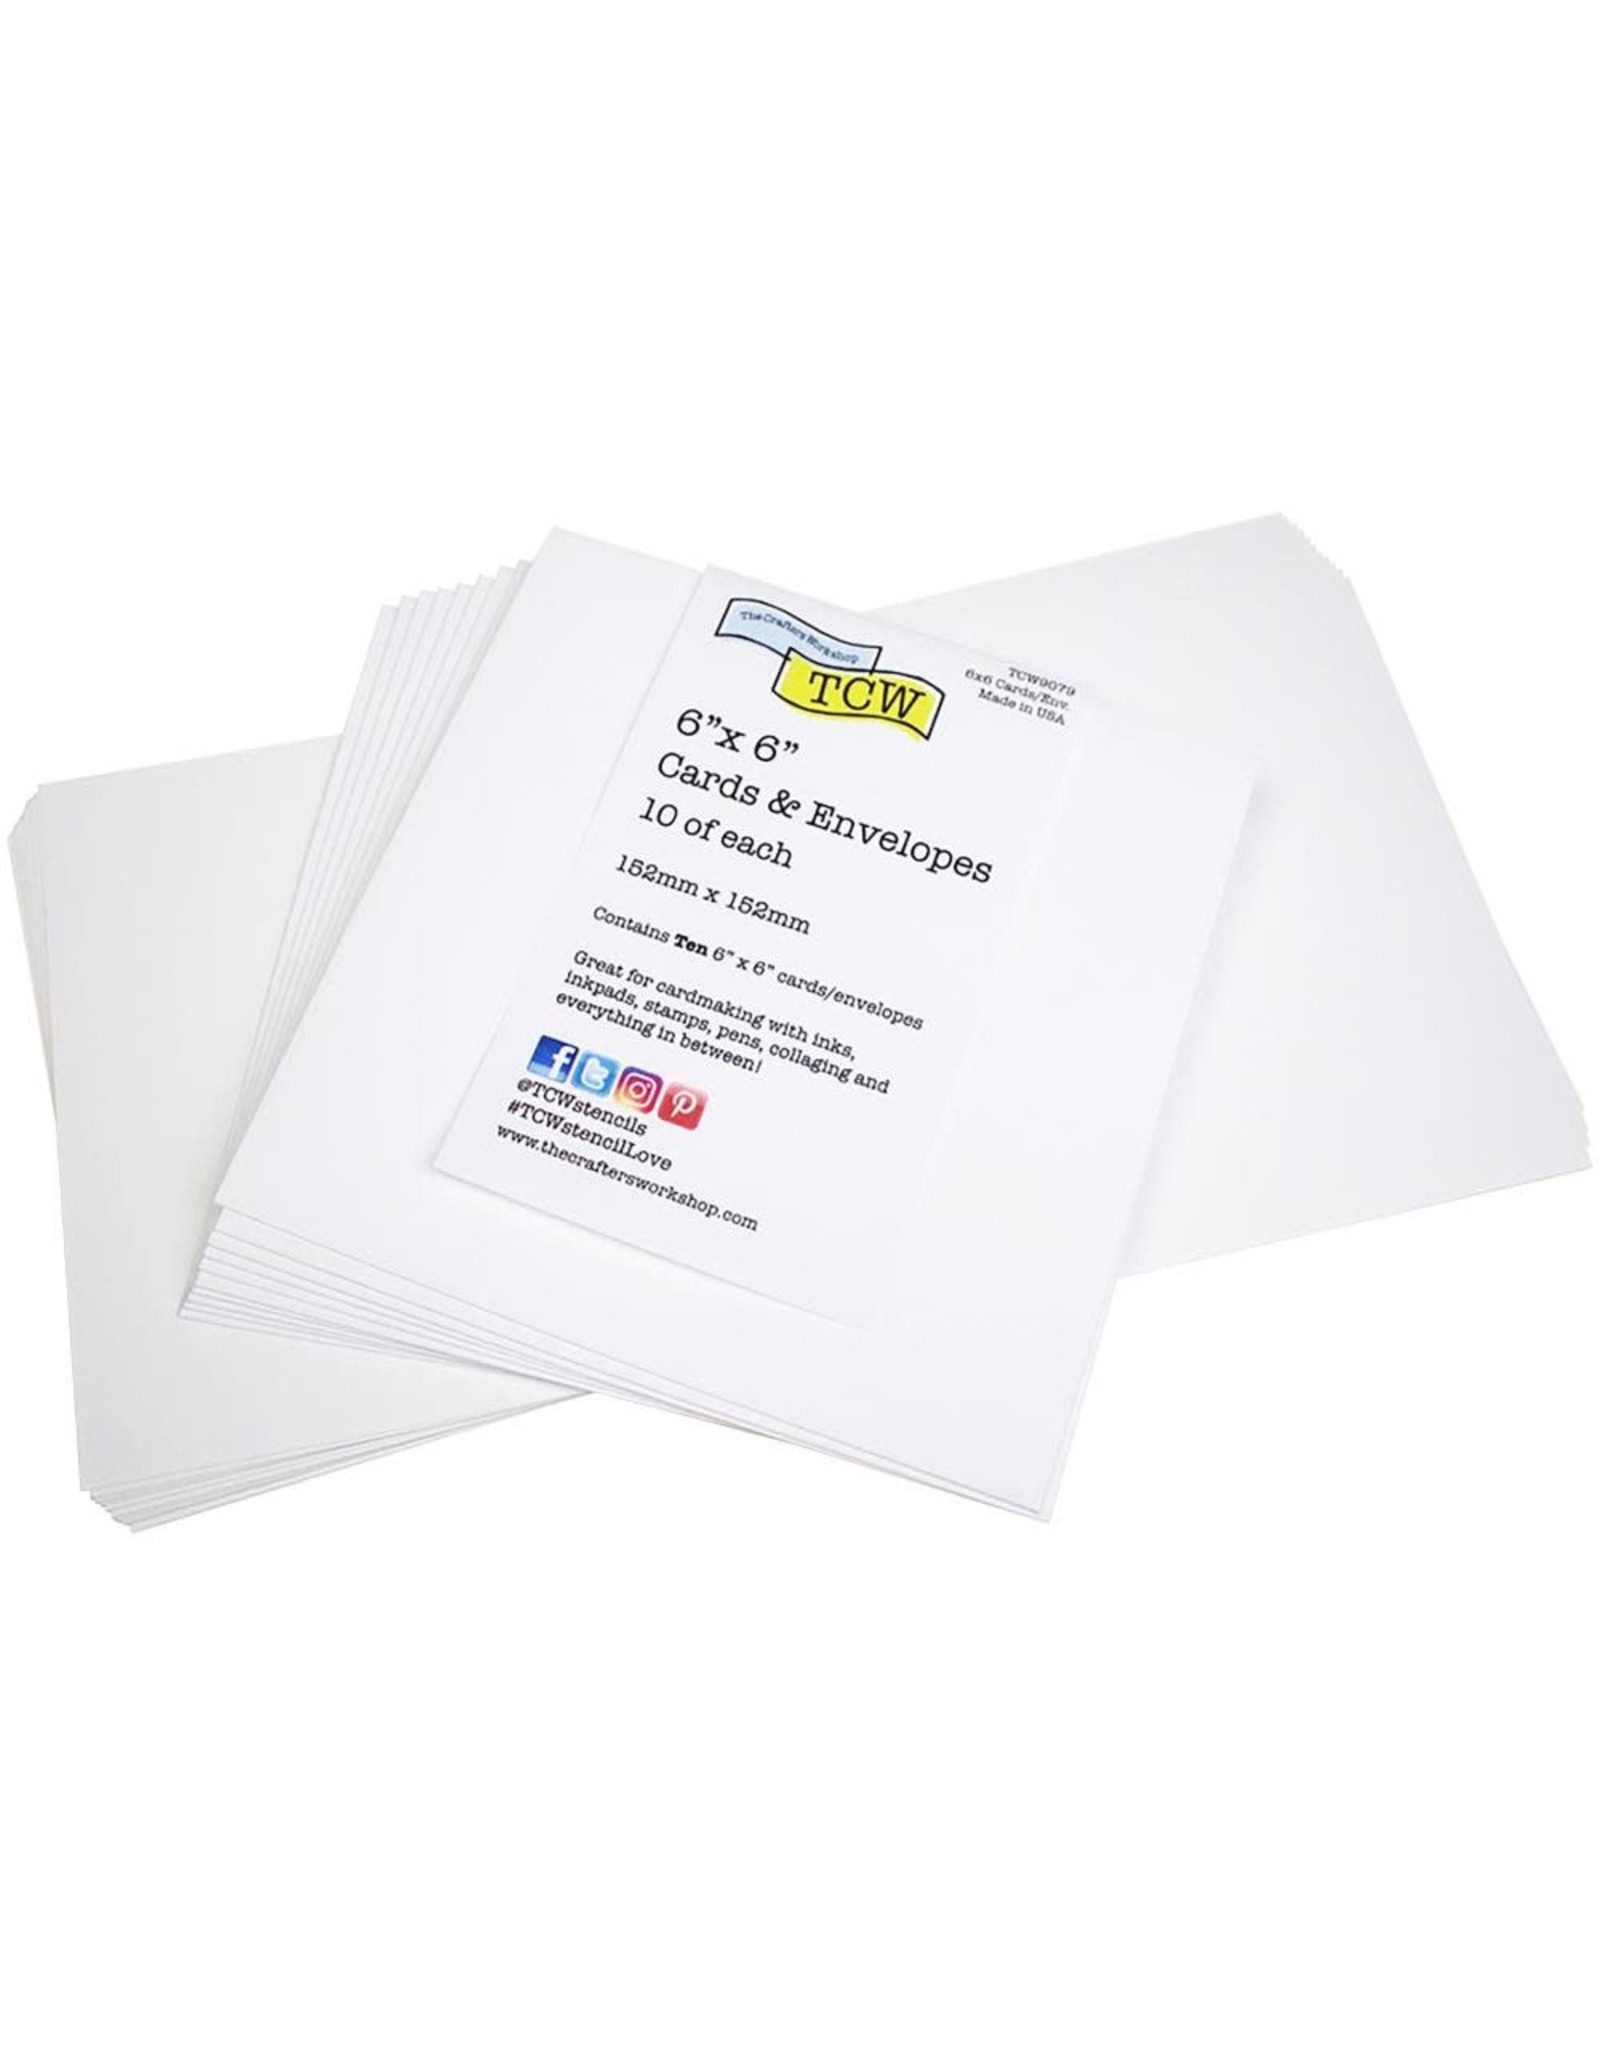 THE CRAFTERS WORKSHOP 6 x 6 Card/Envelope - 10/Pkg